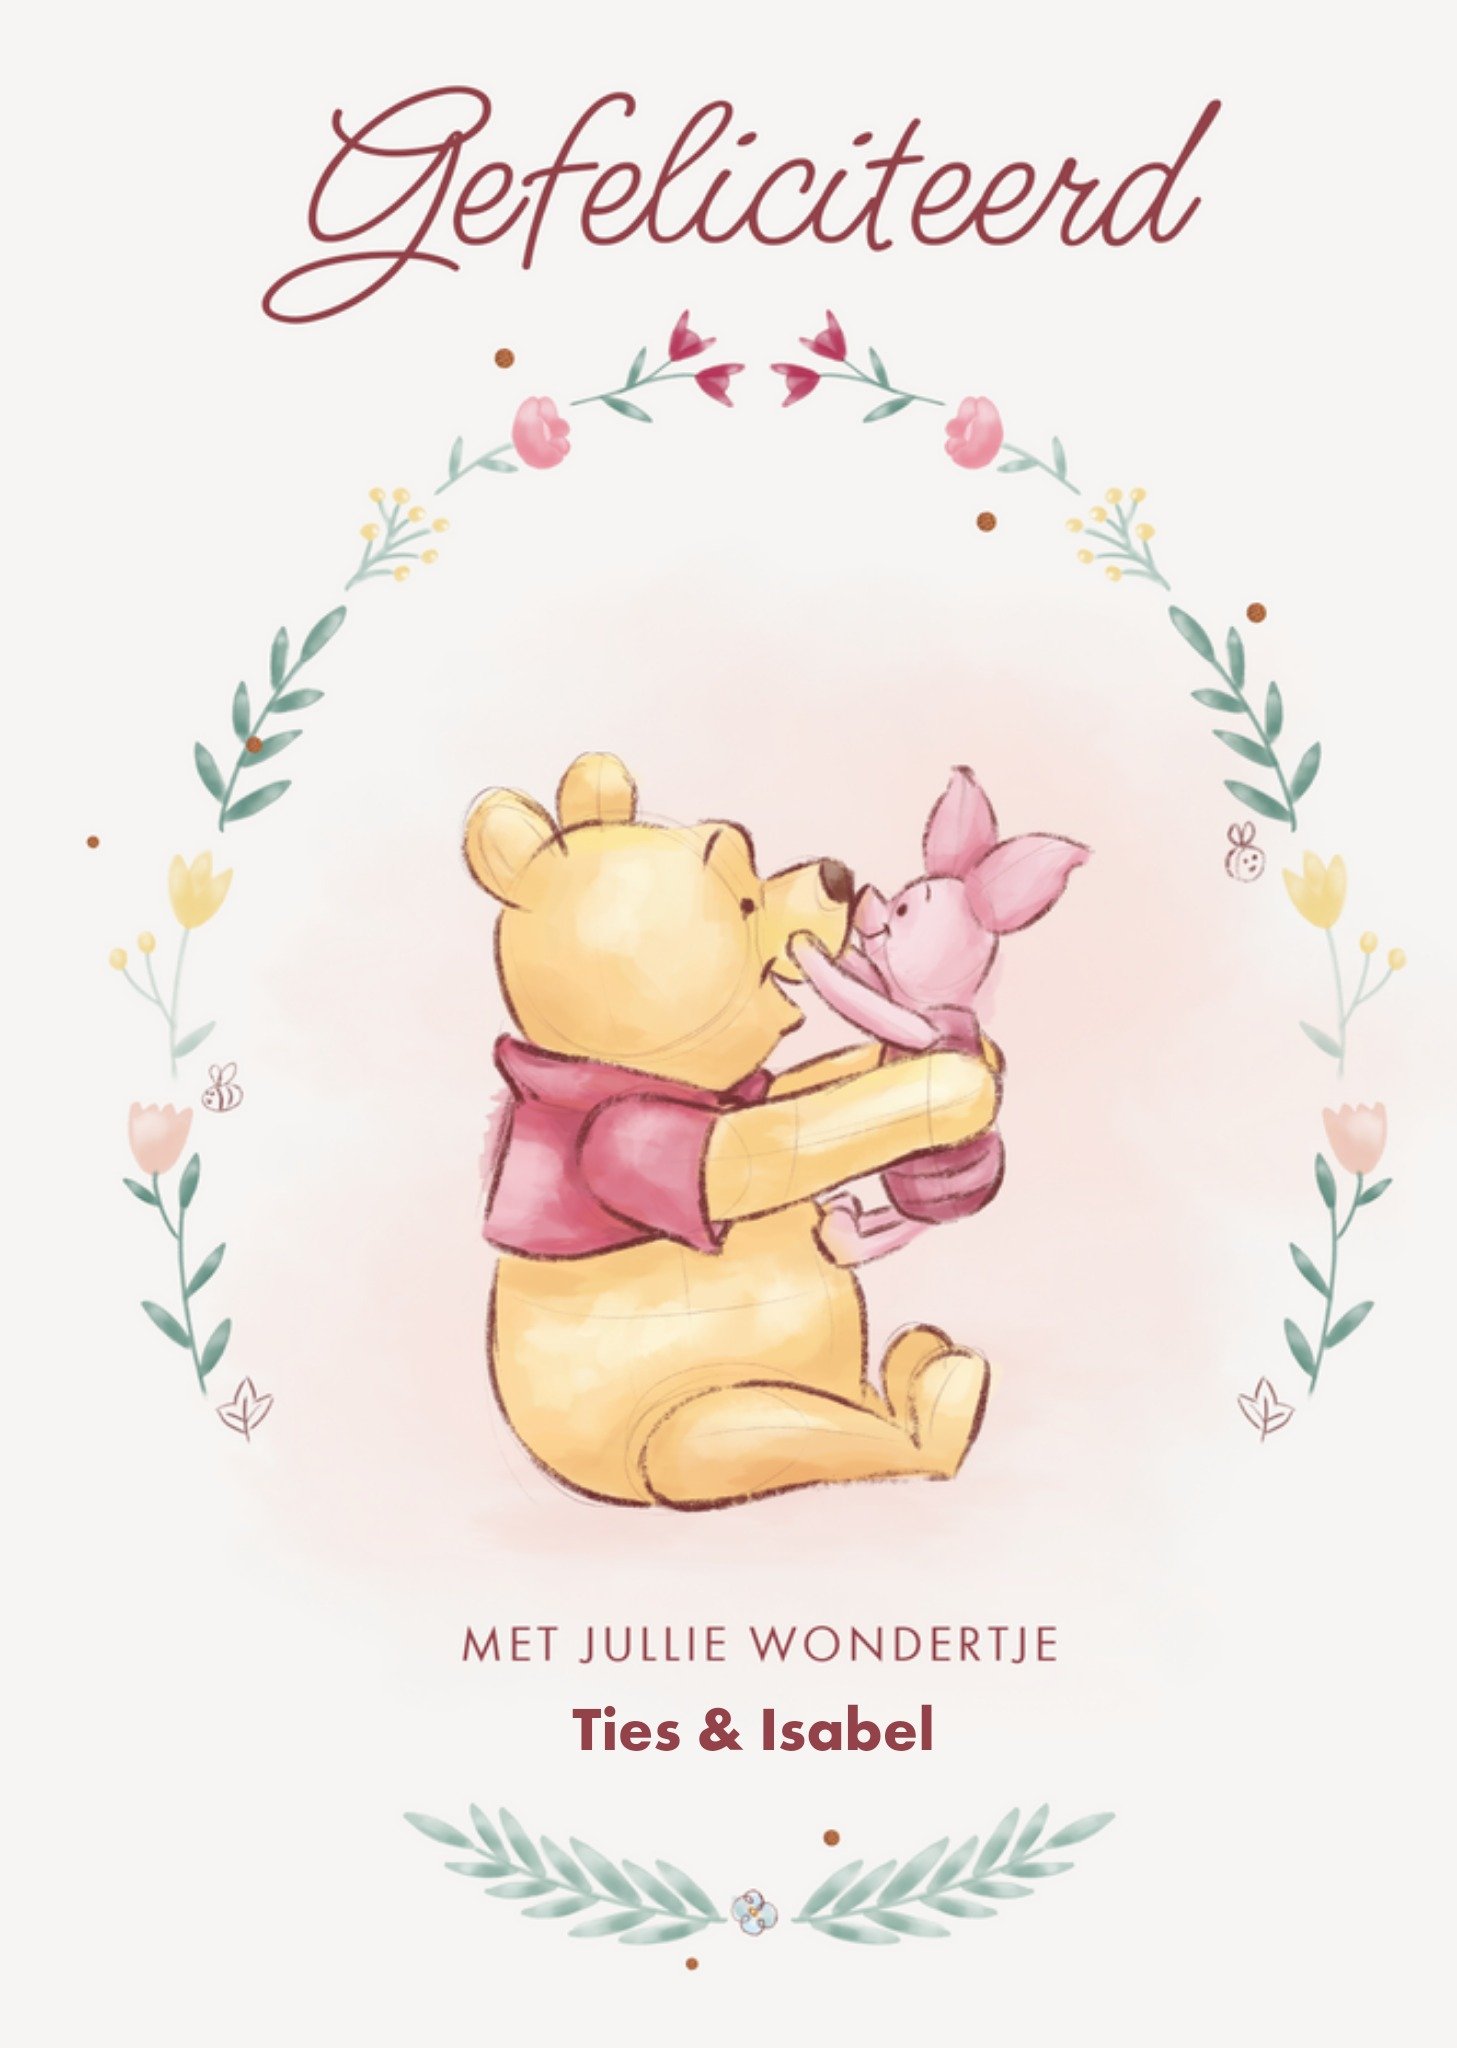 Disney - Geboortekaart - Winnie the Pooh - Pooh en Piglet